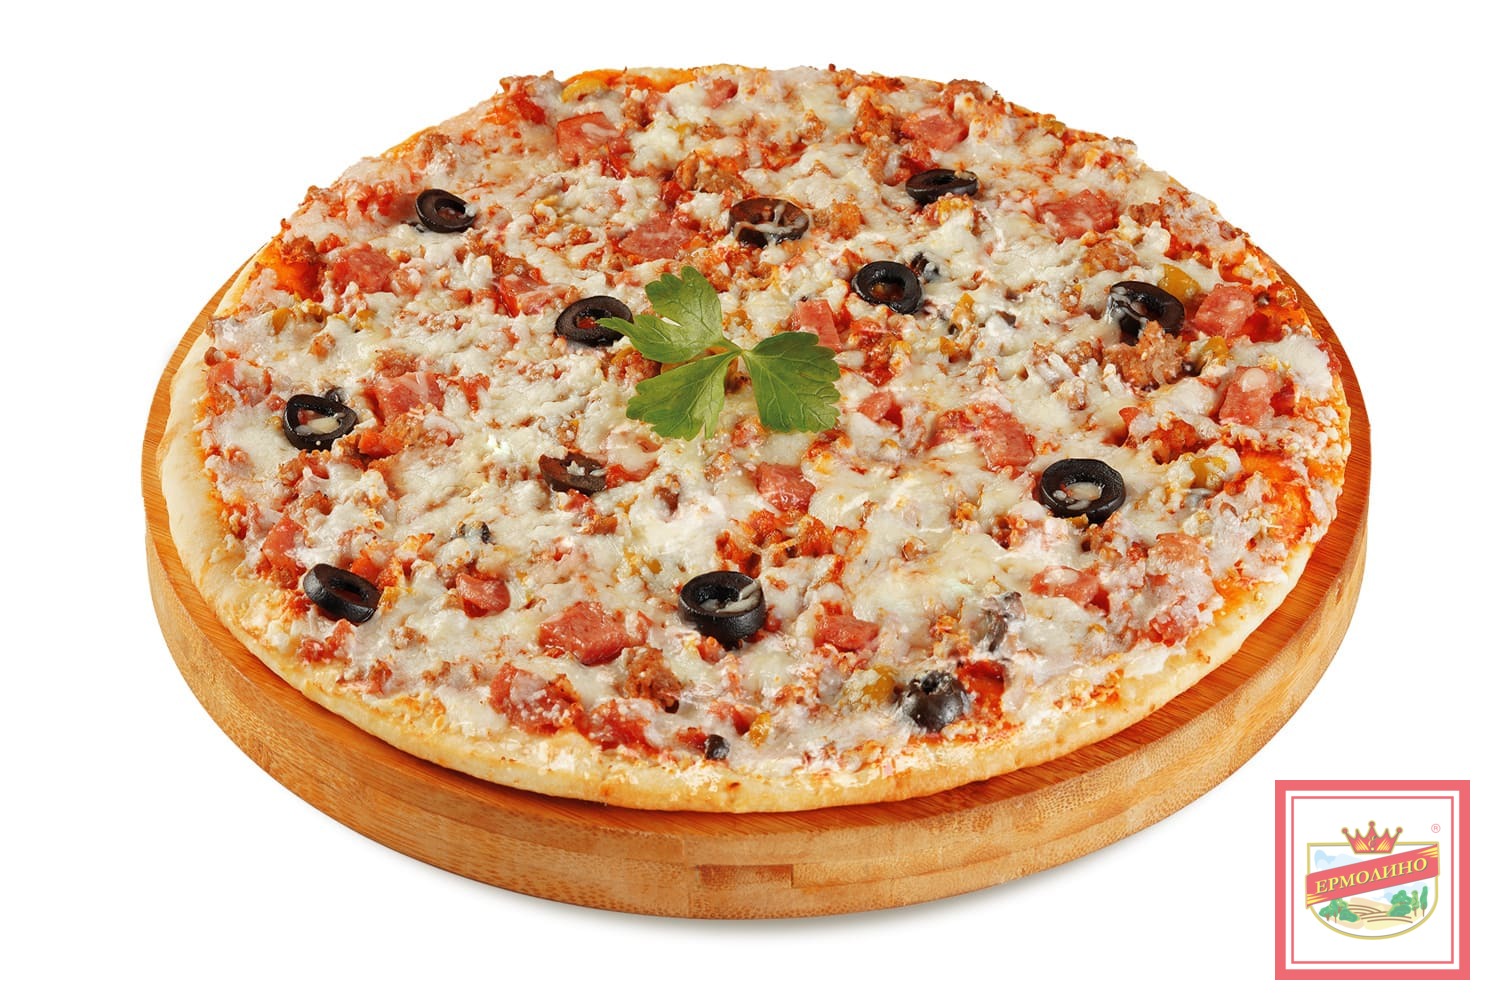 глаголевская пицца купино ассортимент и цены фото 22